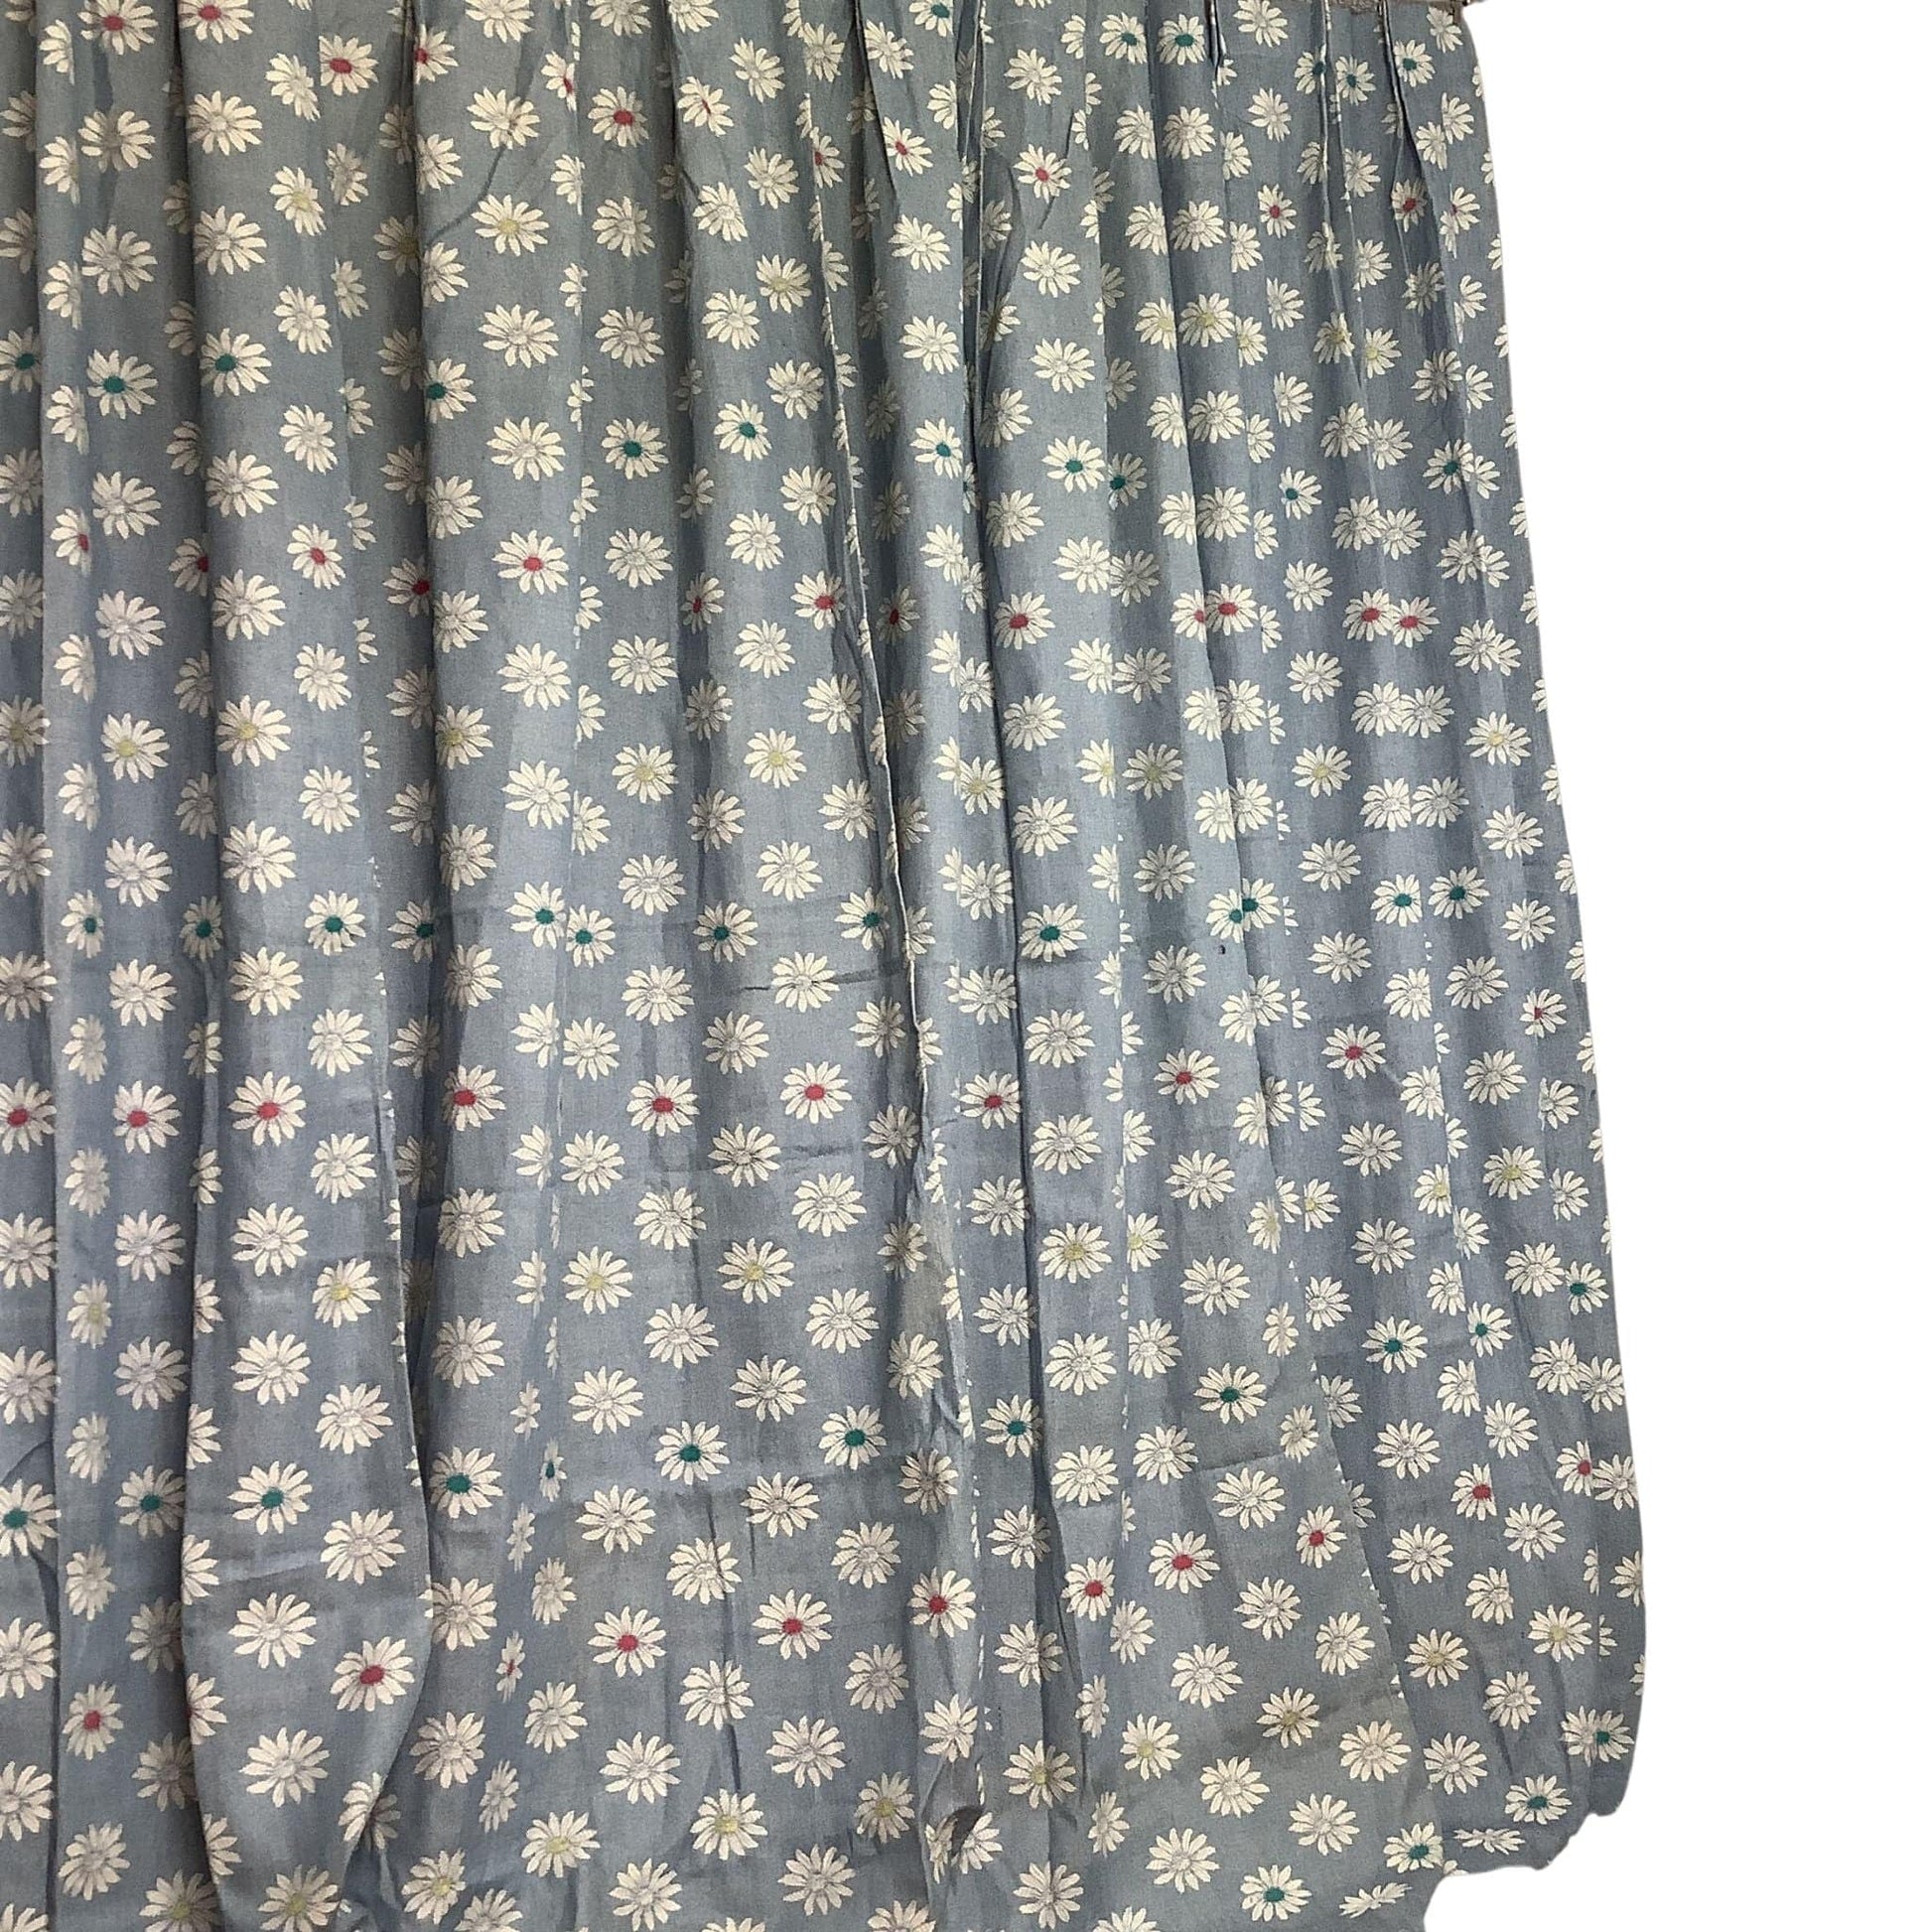 1950s Bates Daisy Curtains Multi / Cotton / Vintage 1950s